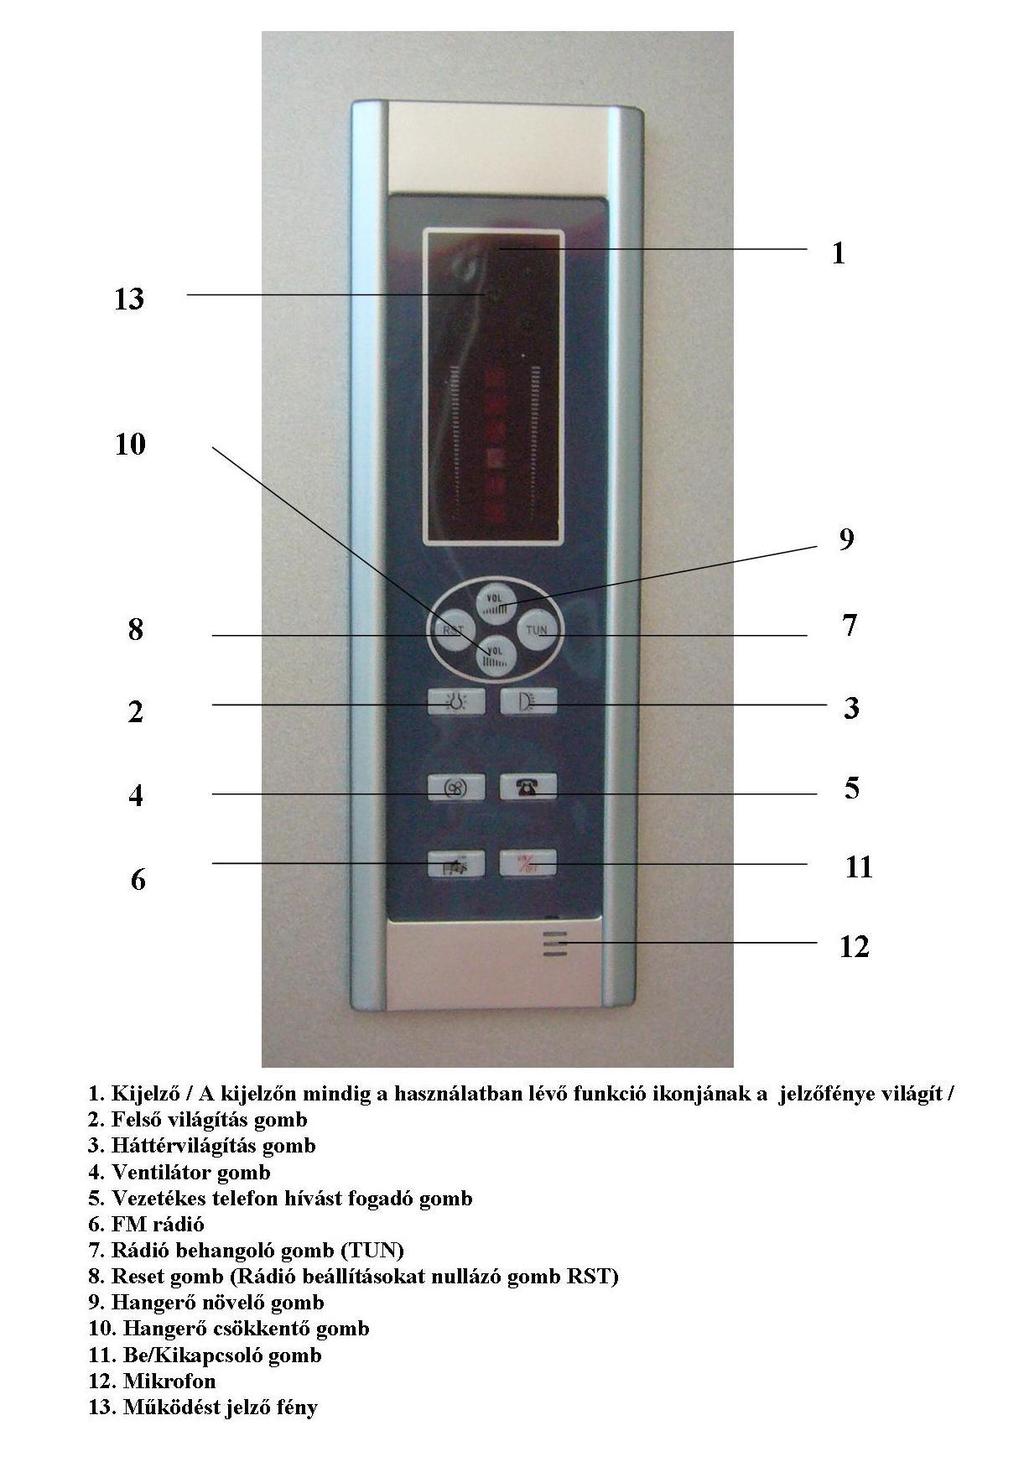 II. A zuhanyváltó: A zuhanyváltó funkciói: A tekerőgomb forgatásával lehet kiválasztani a